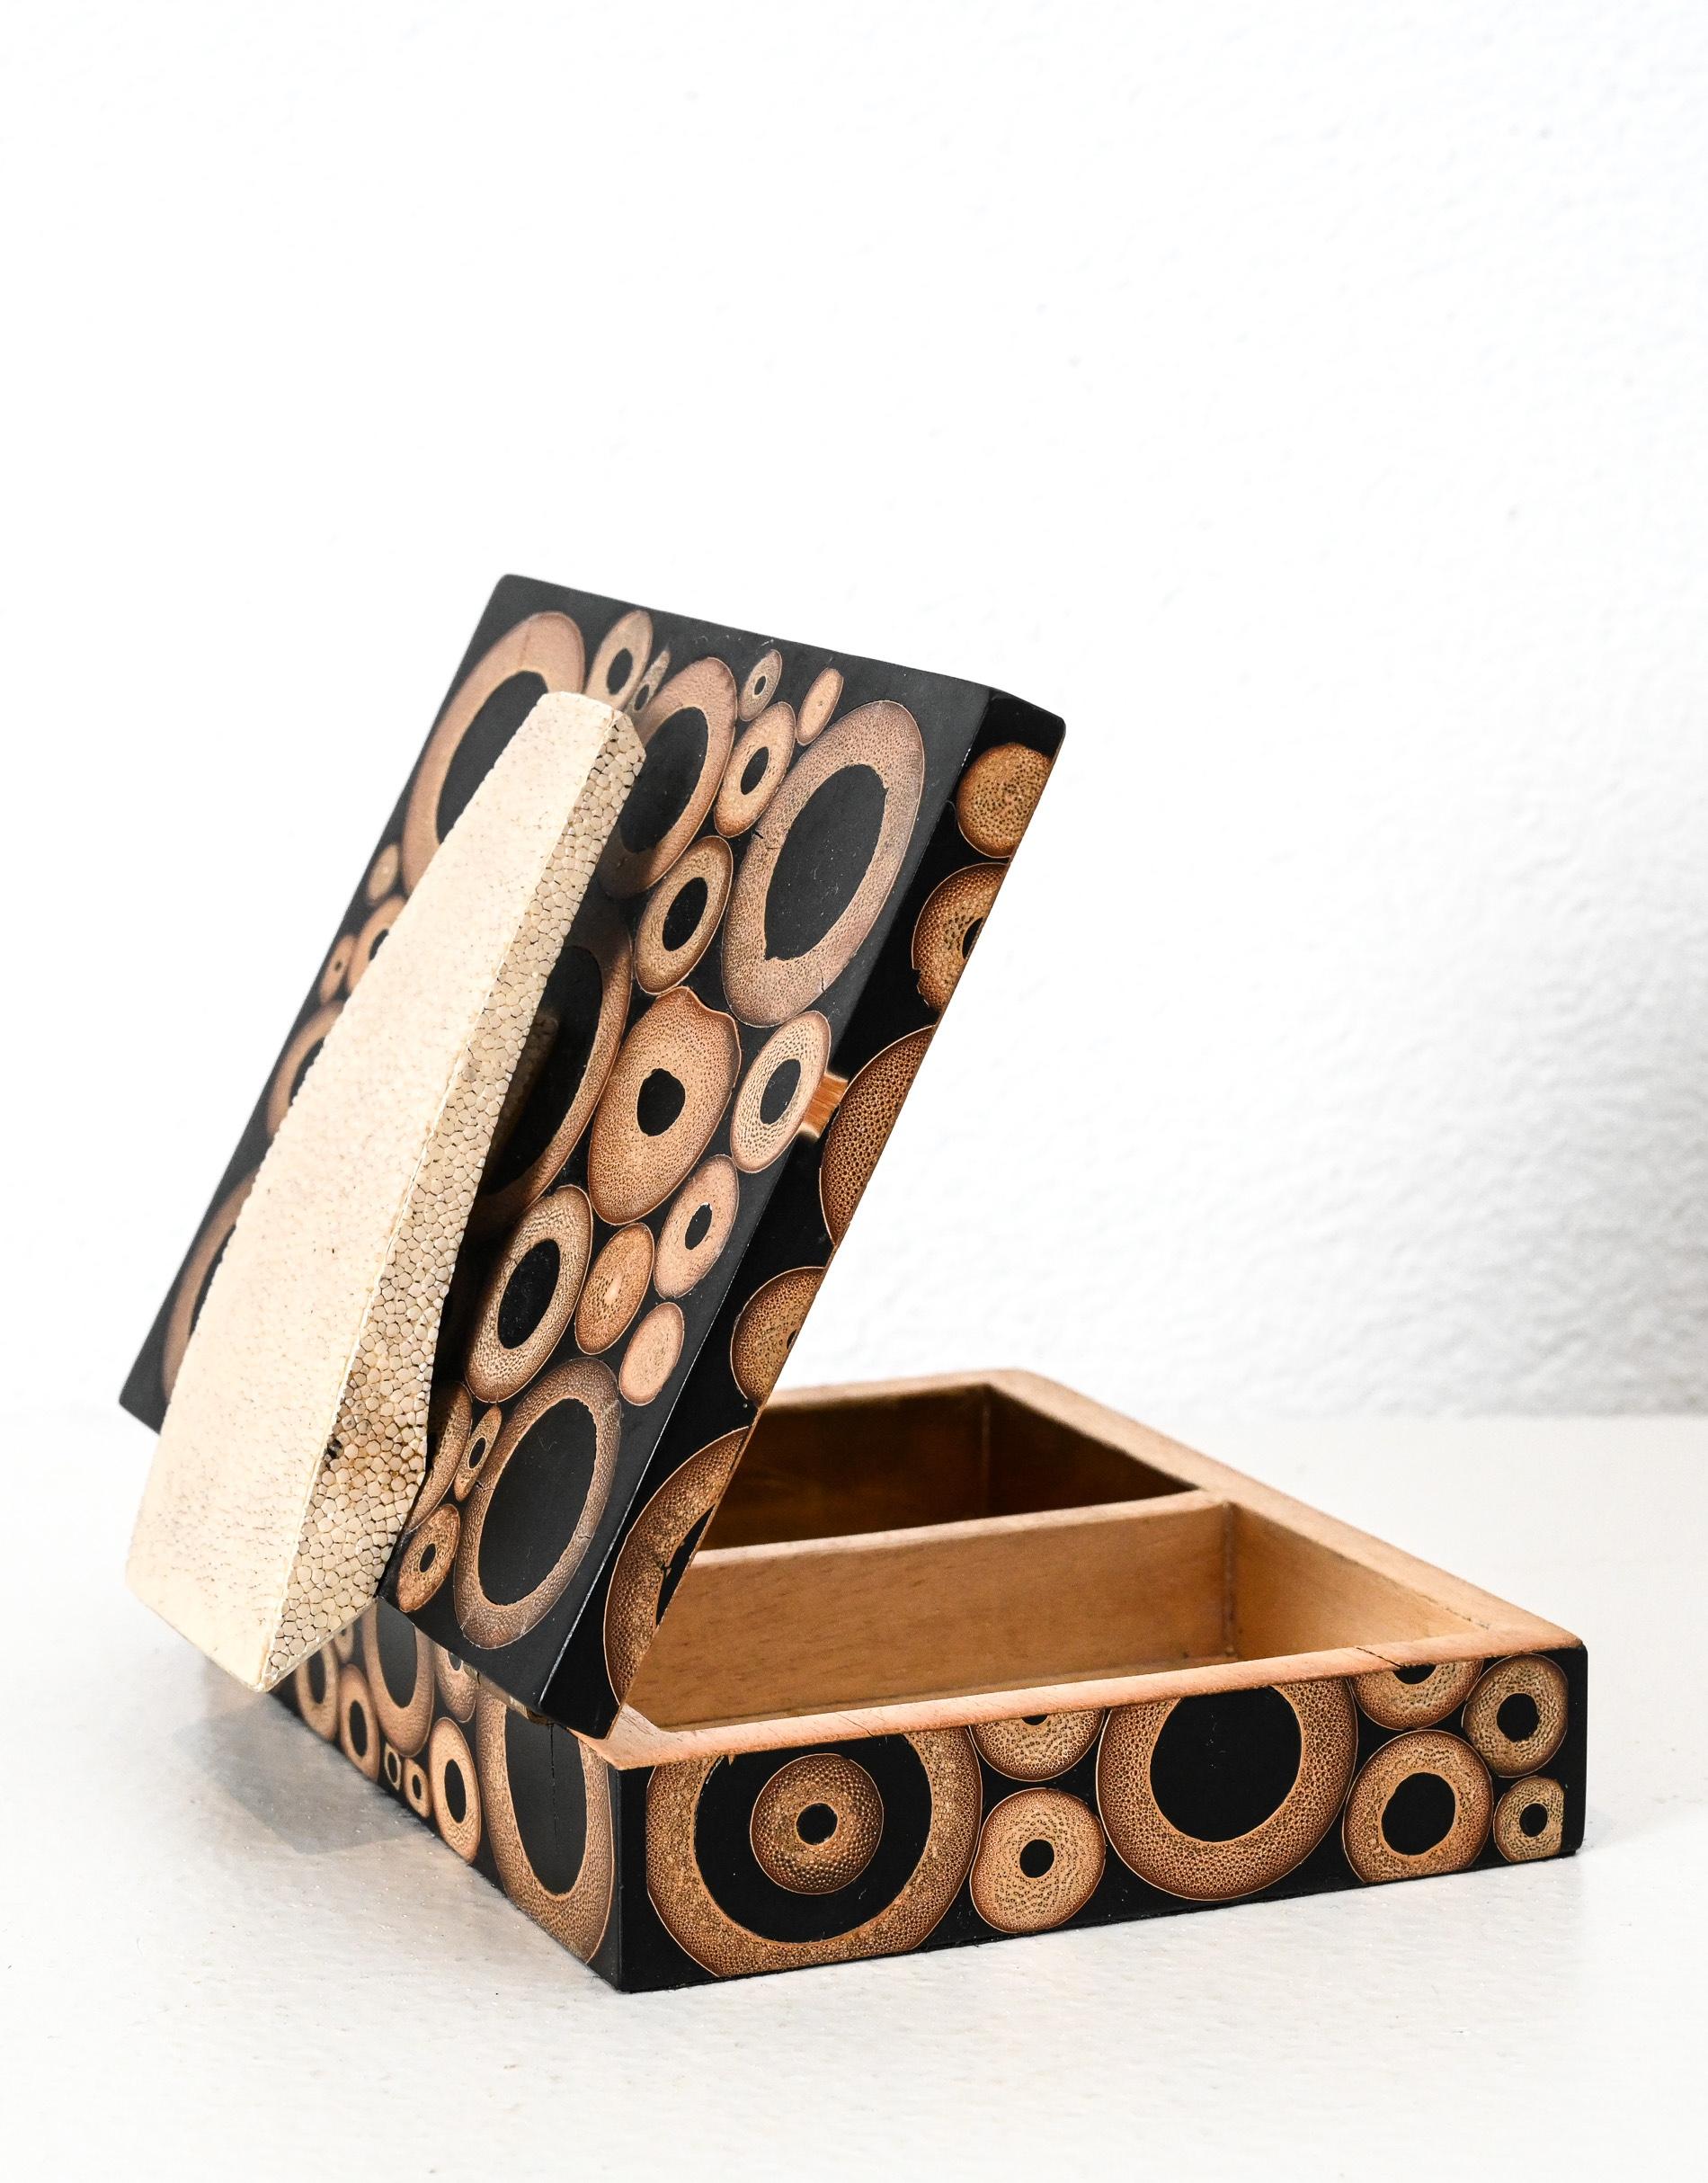 kleine Schachtel im Art-déco-Stil von R&Y Augousti

mit eingelegter Bambusimitat-Dekoration

Einzelhändler Label auf der Unterseite

Paris Frankreich

um 1990

R&Y Augousti wurde 1989 von dem Ehepaar Ria und Yiouri Augousti gegründet. Ihr